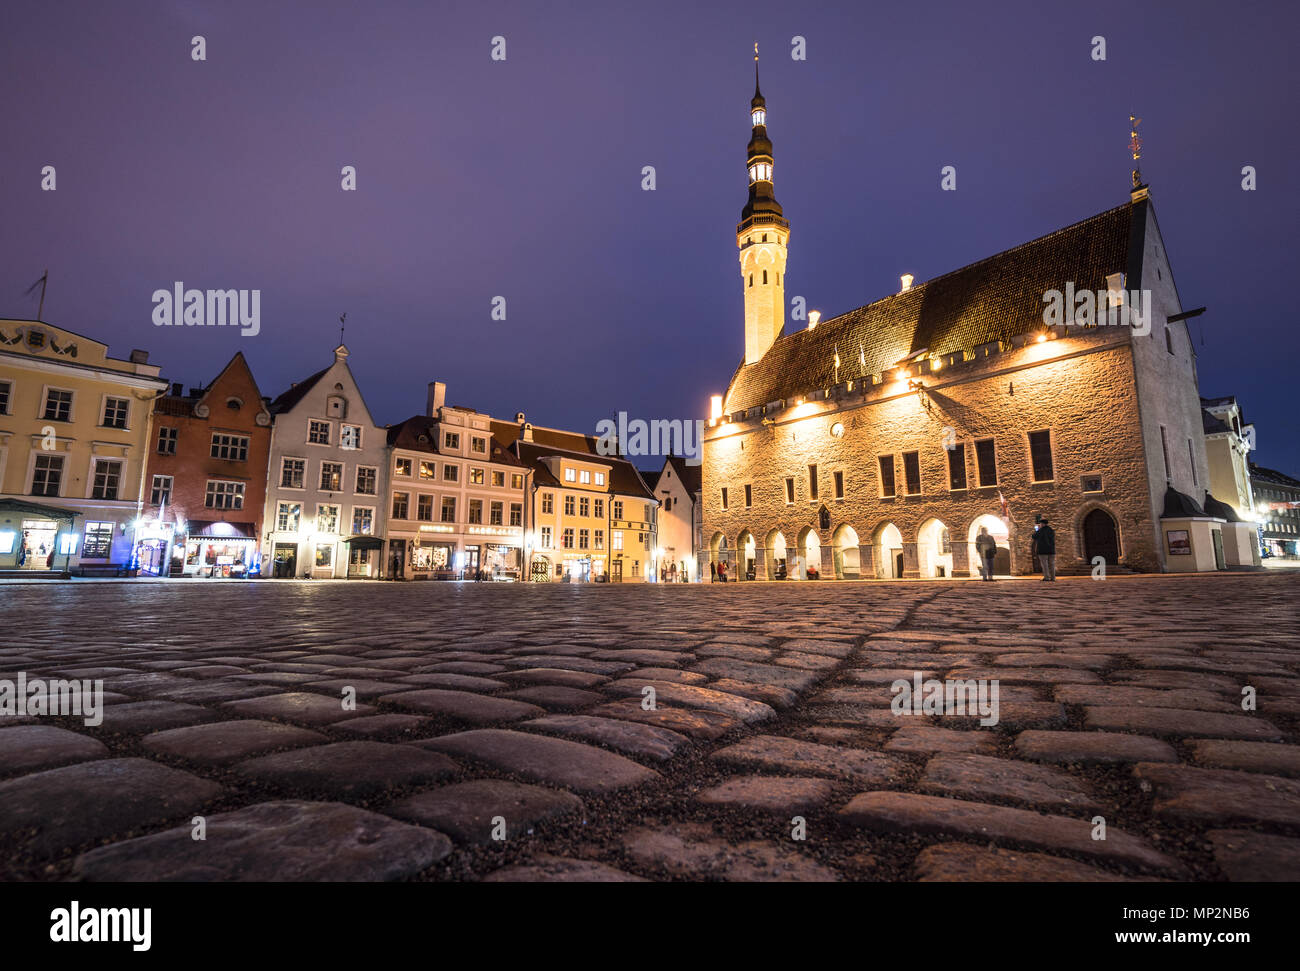 Die Tallin gotischen Rathaus auf dem Marktplatz der Altstadt bei Nacht in Estland Hauptstadt im Winter. Tallinn ist ein beliebtes Reiseziel i Stockfoto